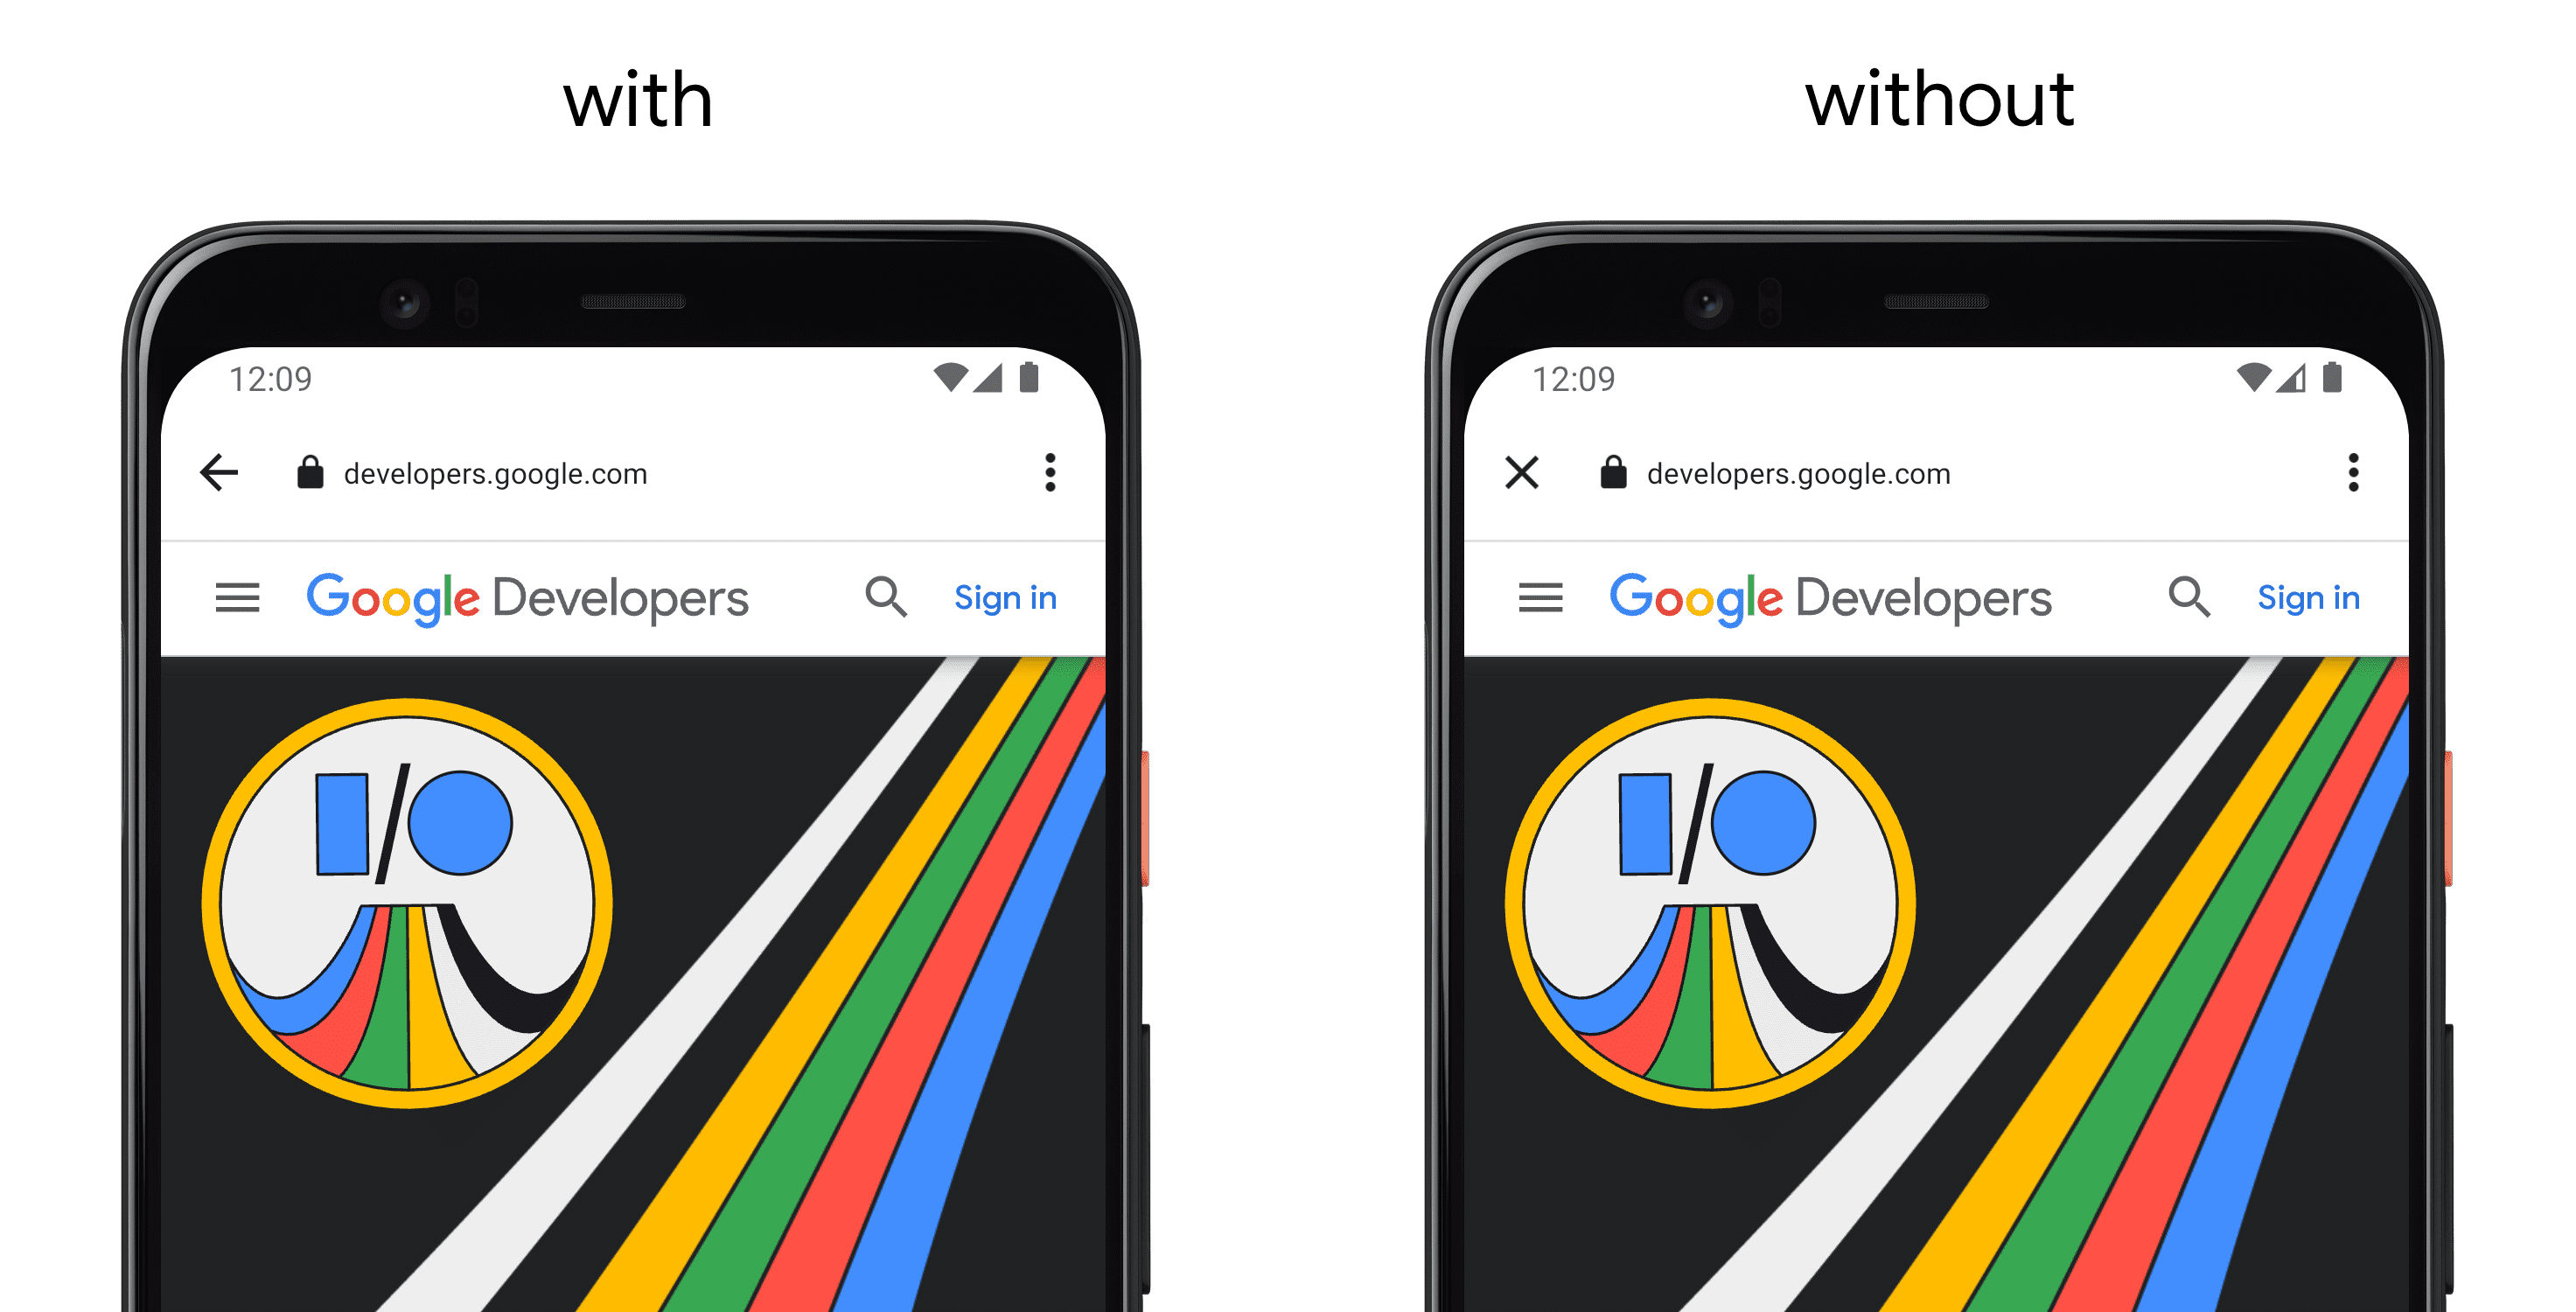 Links ein Smartphone, auf dem eine App mit „setCloseButtonIcon()“ angezeigt wird, und auf der rechten Seite ein separates Smartphone ohne API